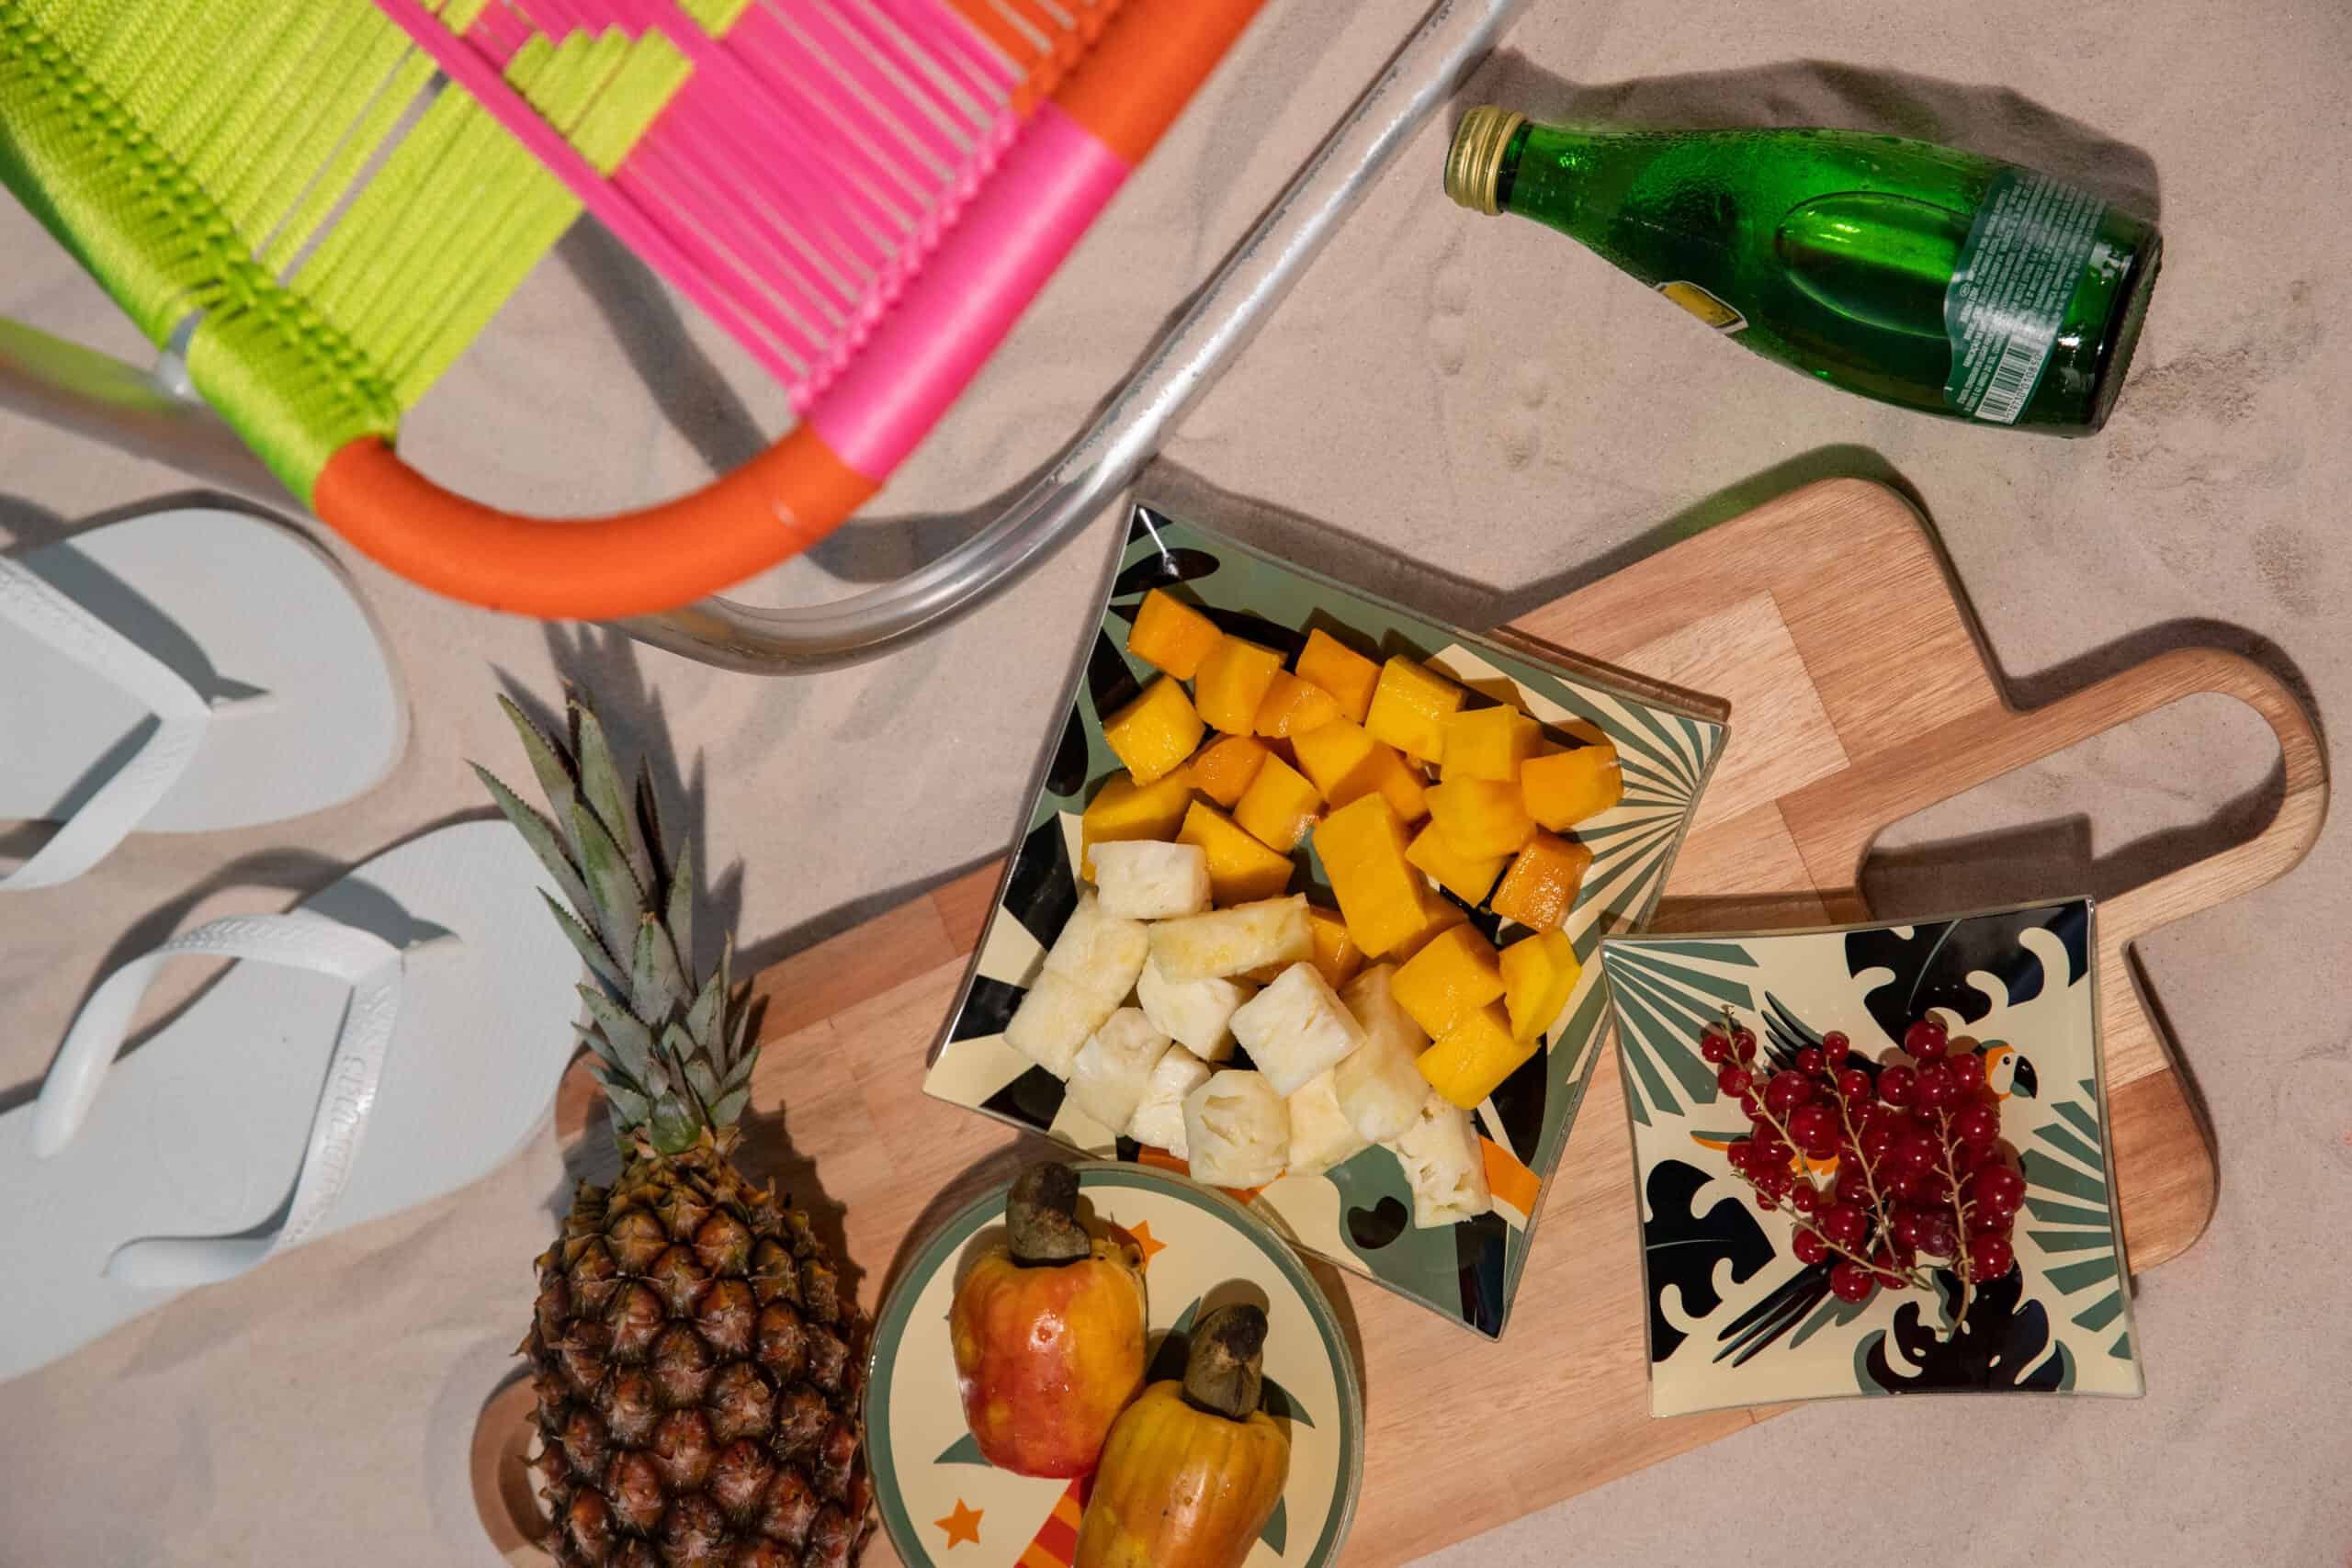 uma bandeja com alimentos típicos do verão: abacaxi, caju e manga. Bem colorida, a decoração conta também com uma garrafa de água